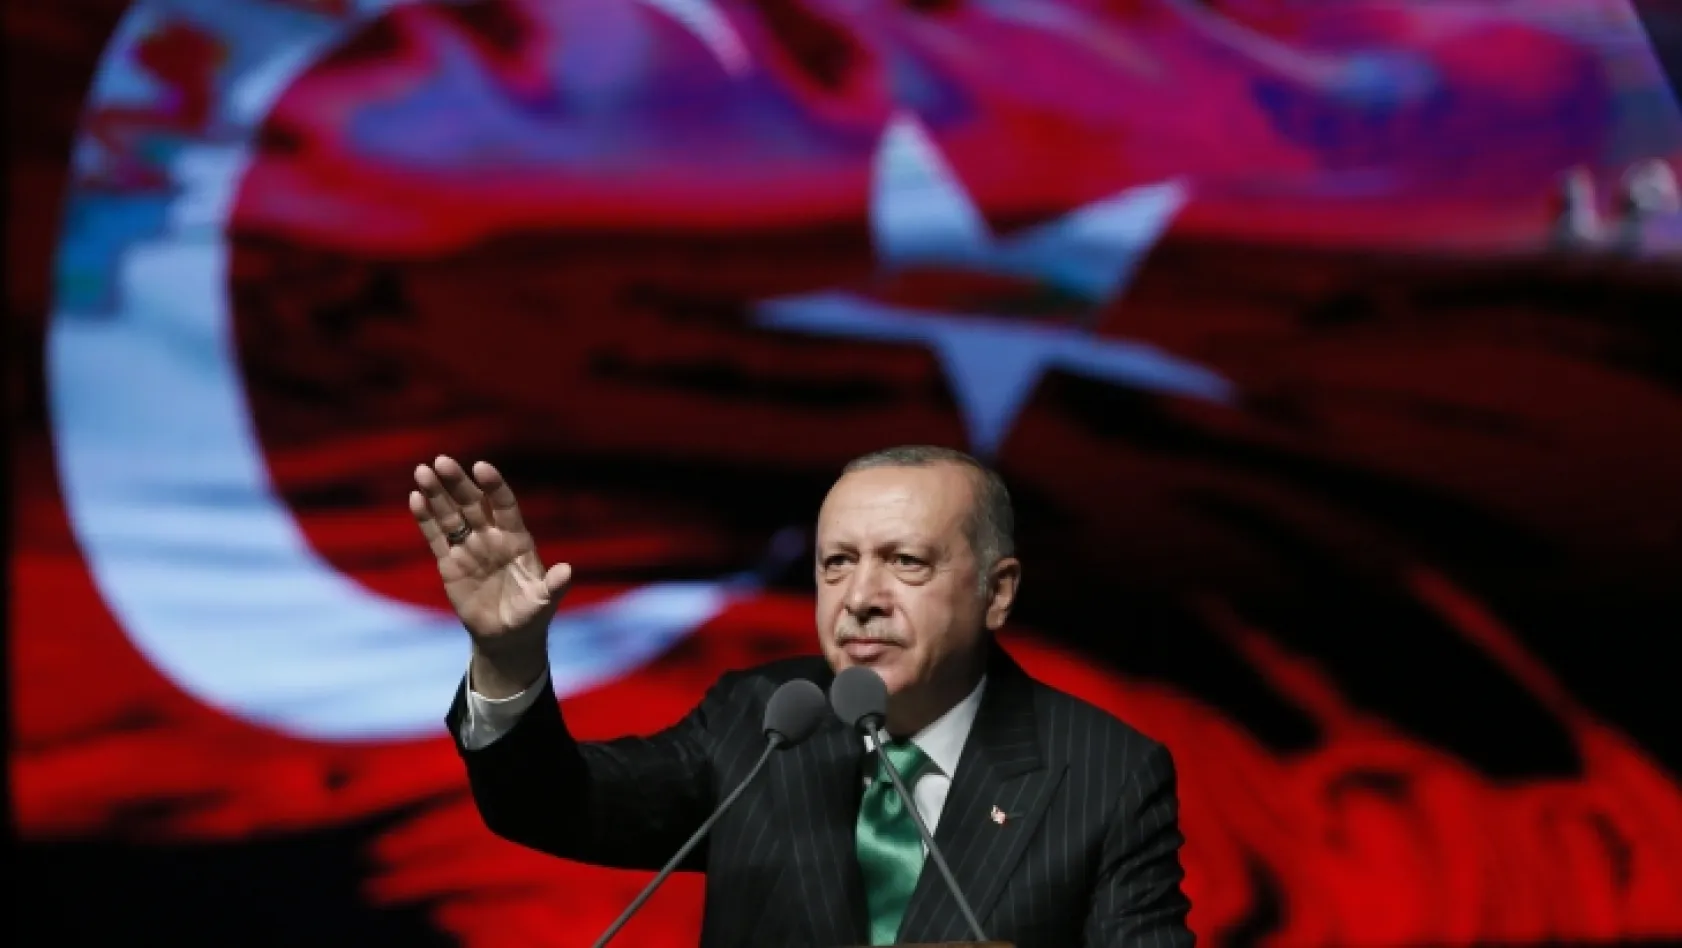 Cumhurbaşkanı Erdoğan'dan 'yeni yıl' mesajı